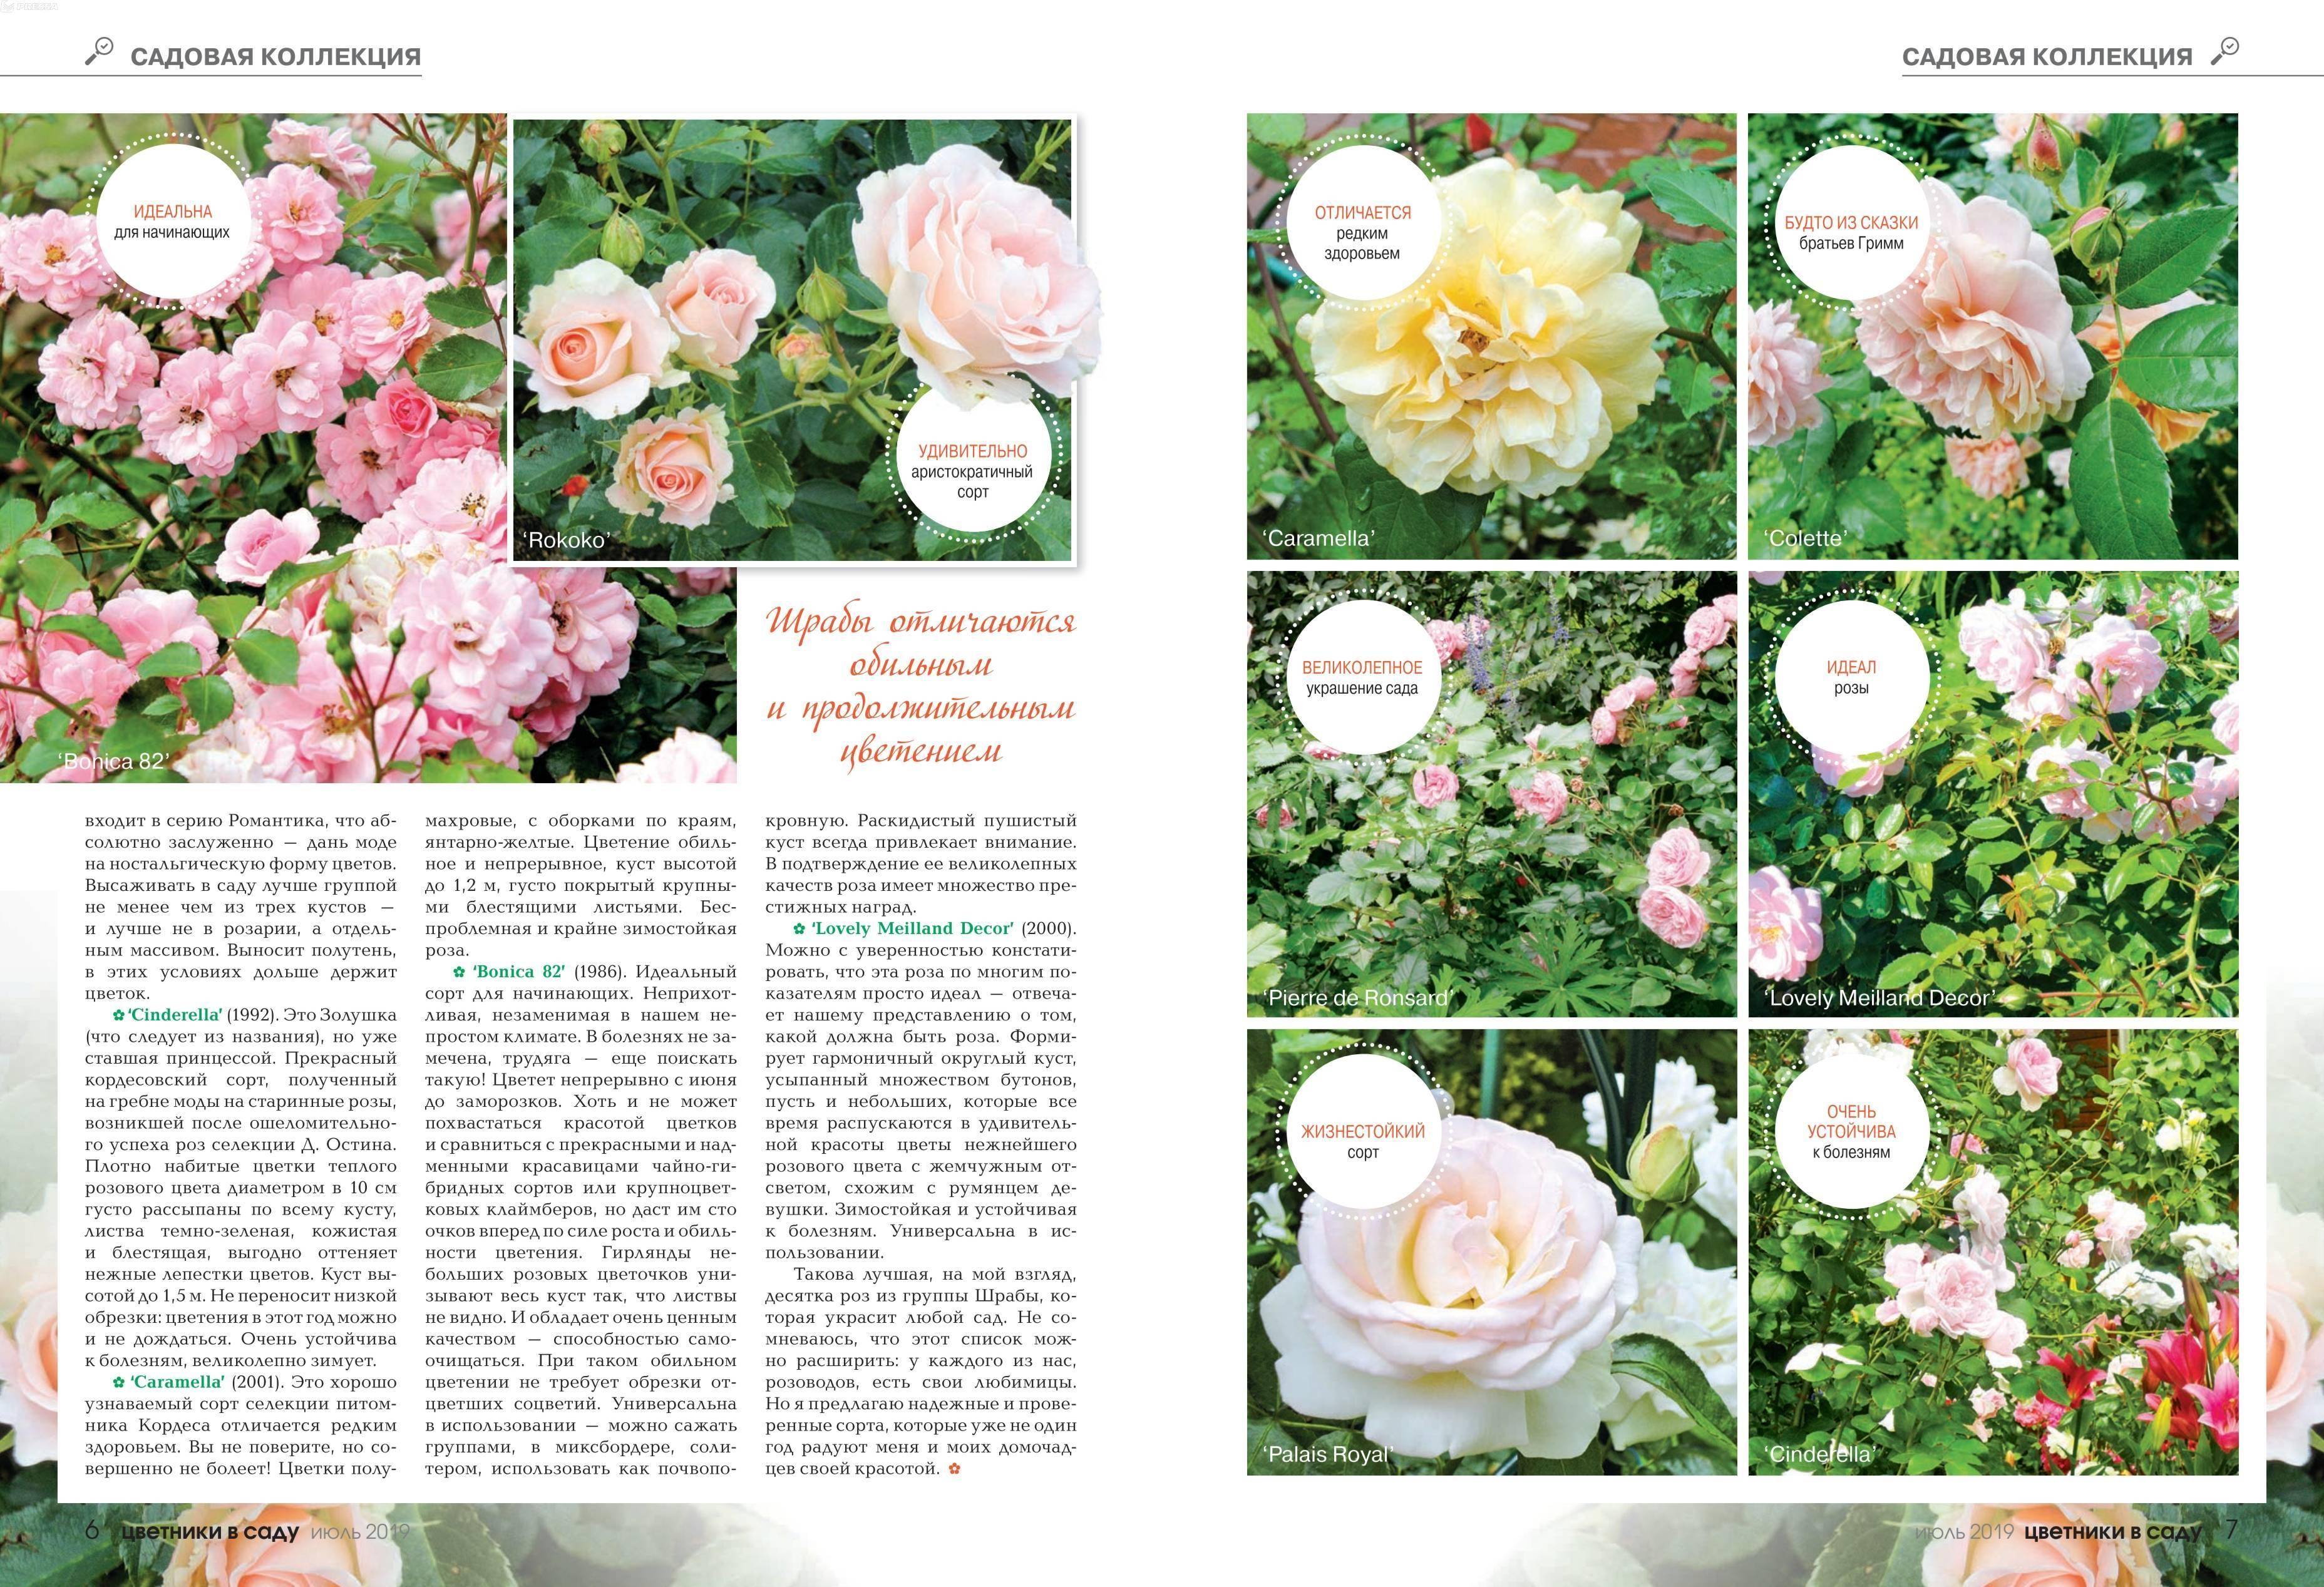 Описание сорта плетистой розы карамелла из группы шрабов: особенности ухода